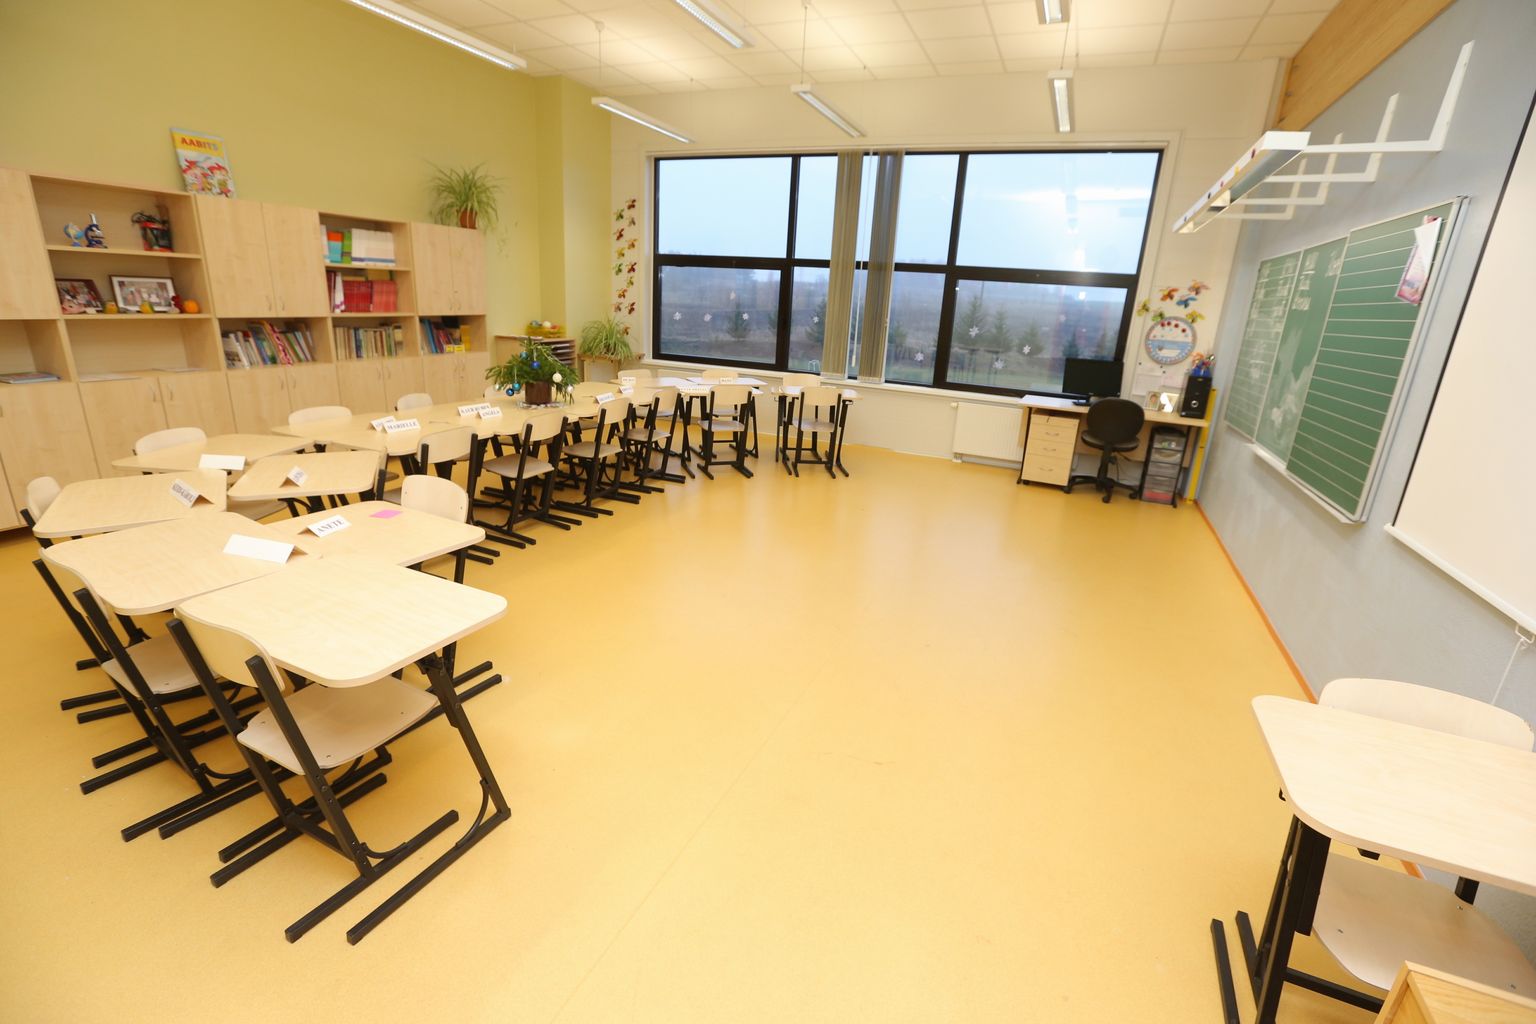 Lähte ühisgümnaasiumi põhikooli maja. Kool on praegu suunatud e-õppele, nagu ka kõik teised haridusasutused Eestis.